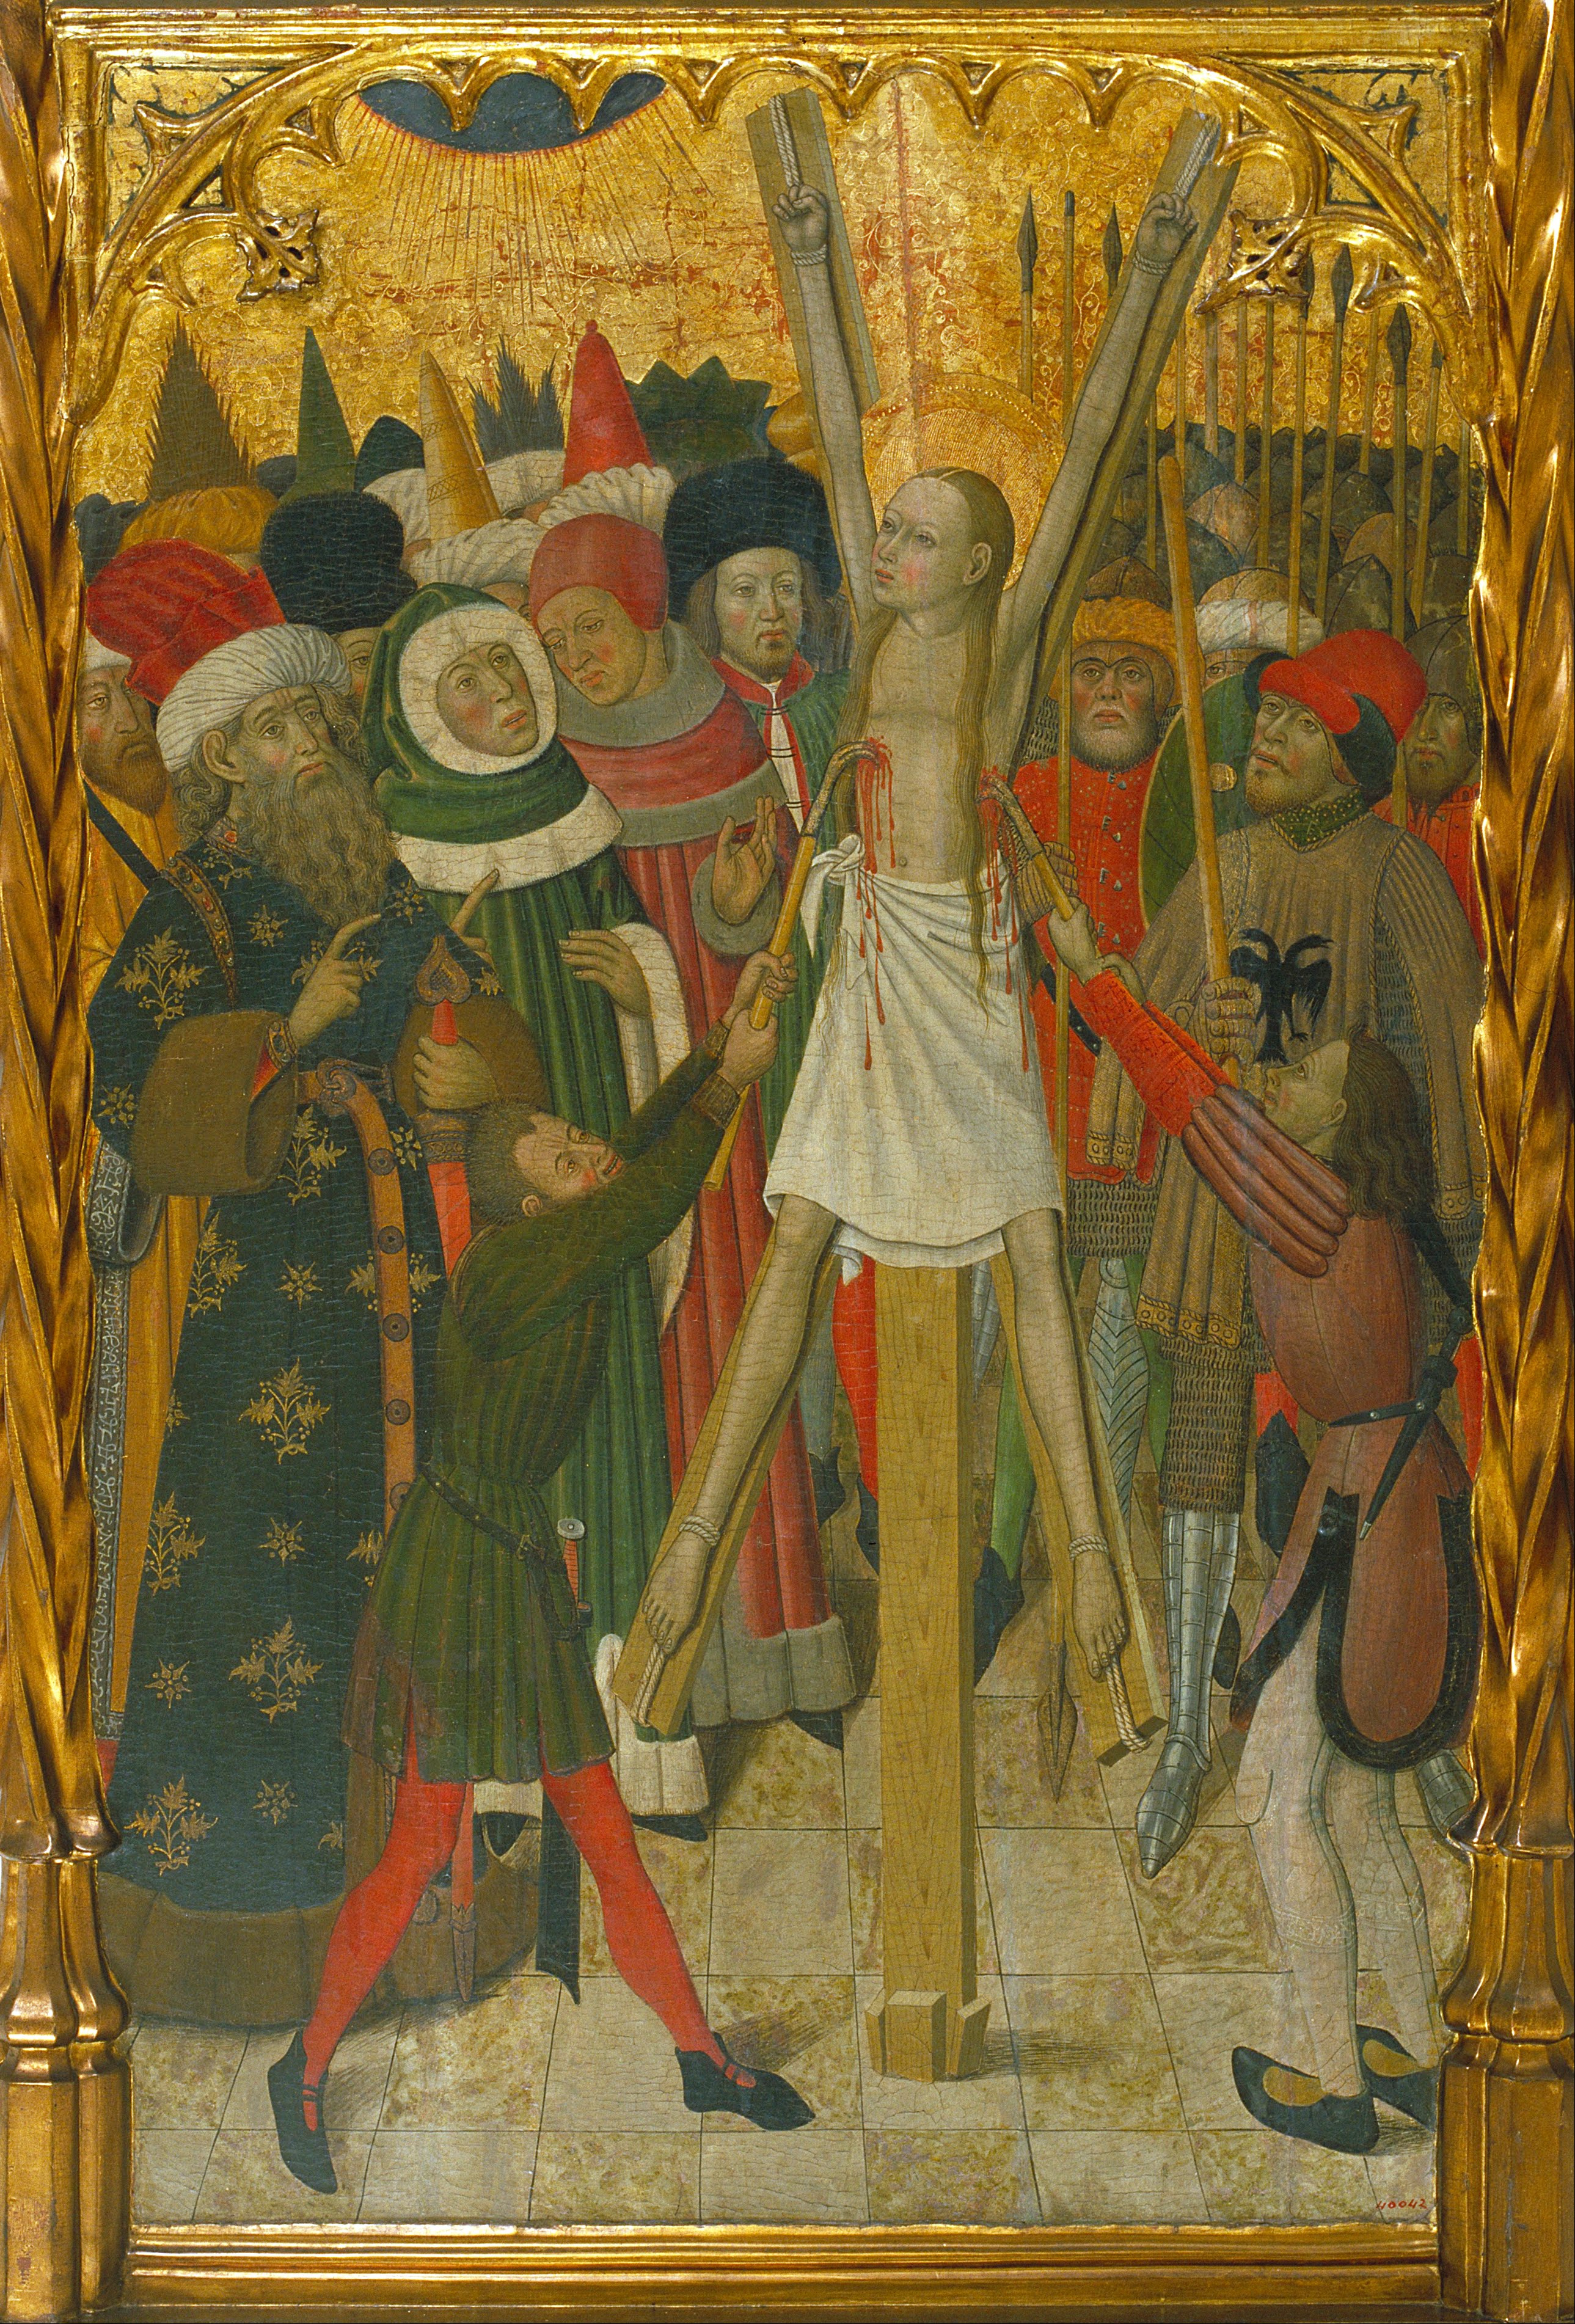 Bernat Martorell - 15th century - 1452